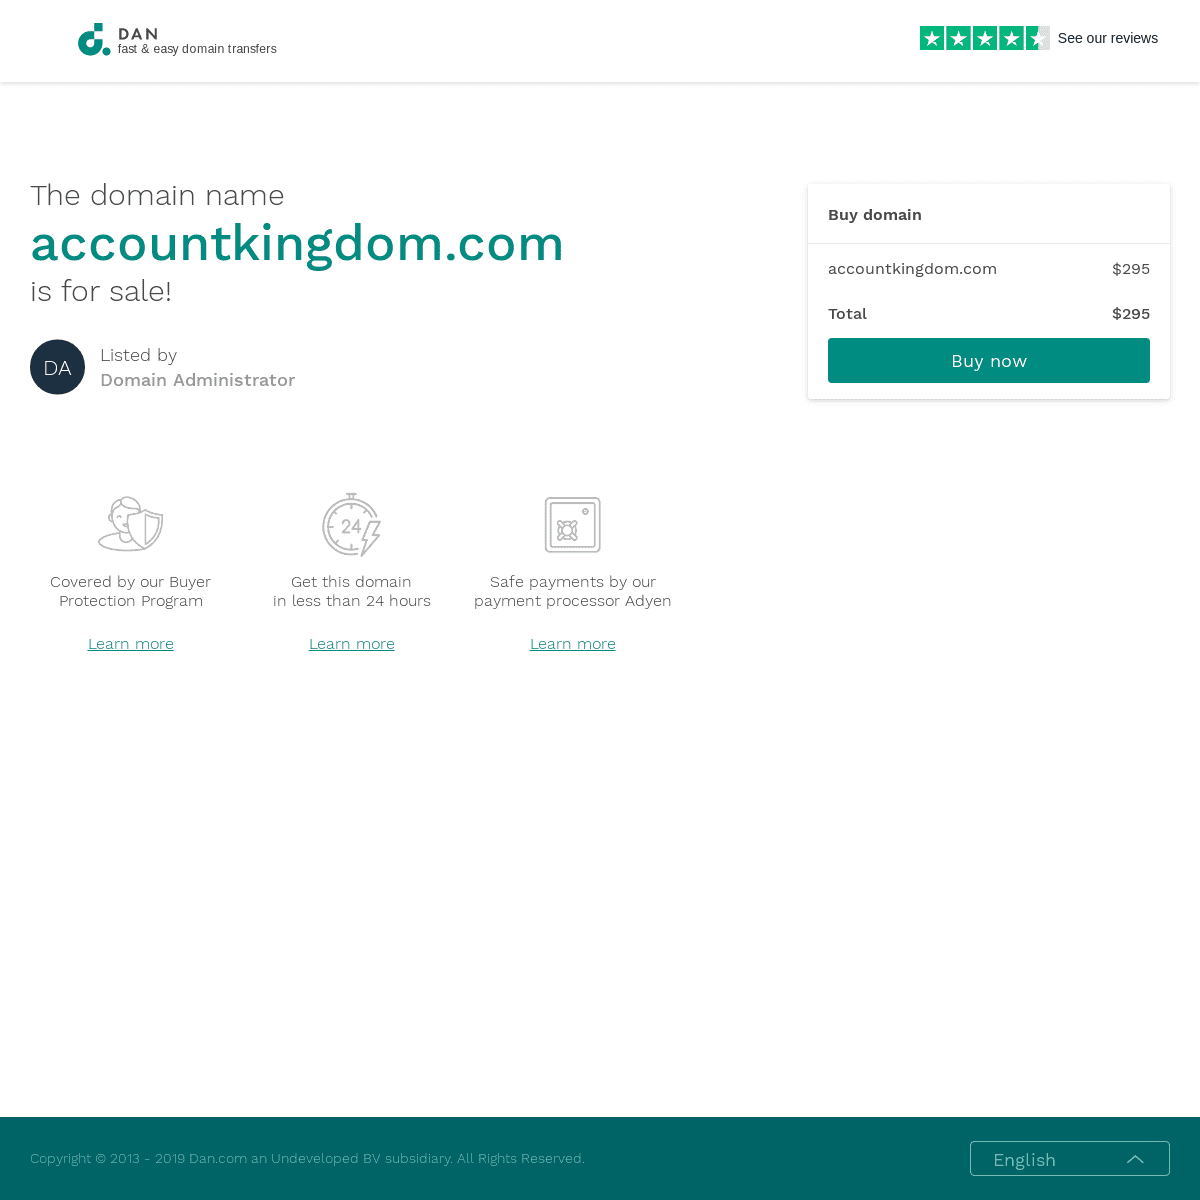 A complete backup of accountkingdom.com